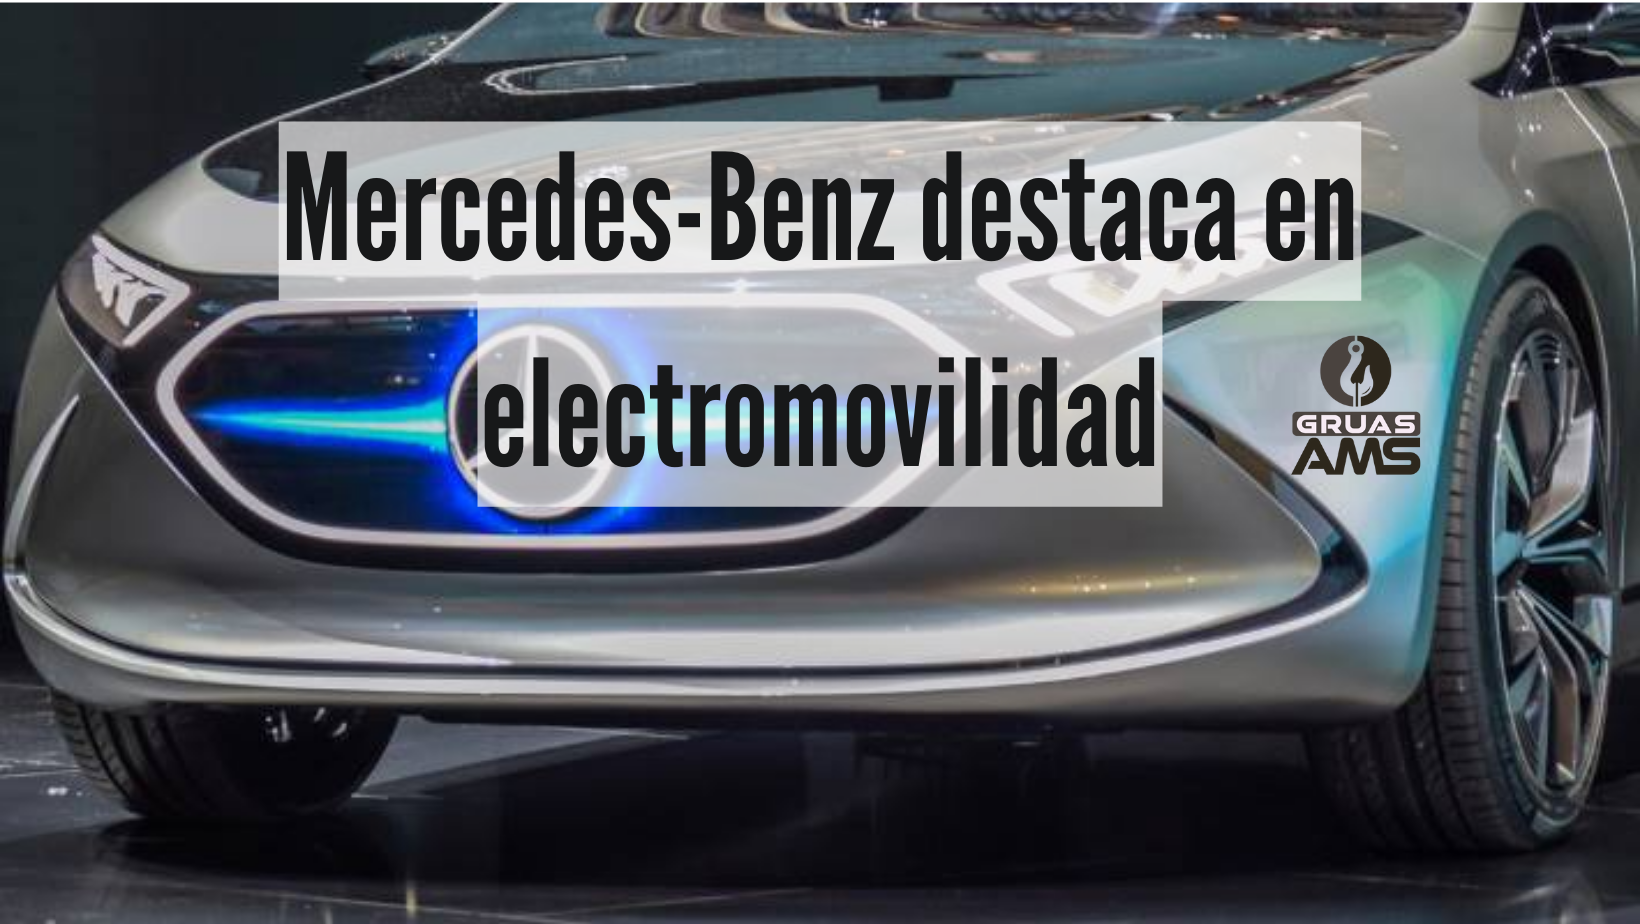 Mercedes-Benz destaca en electromovilidad